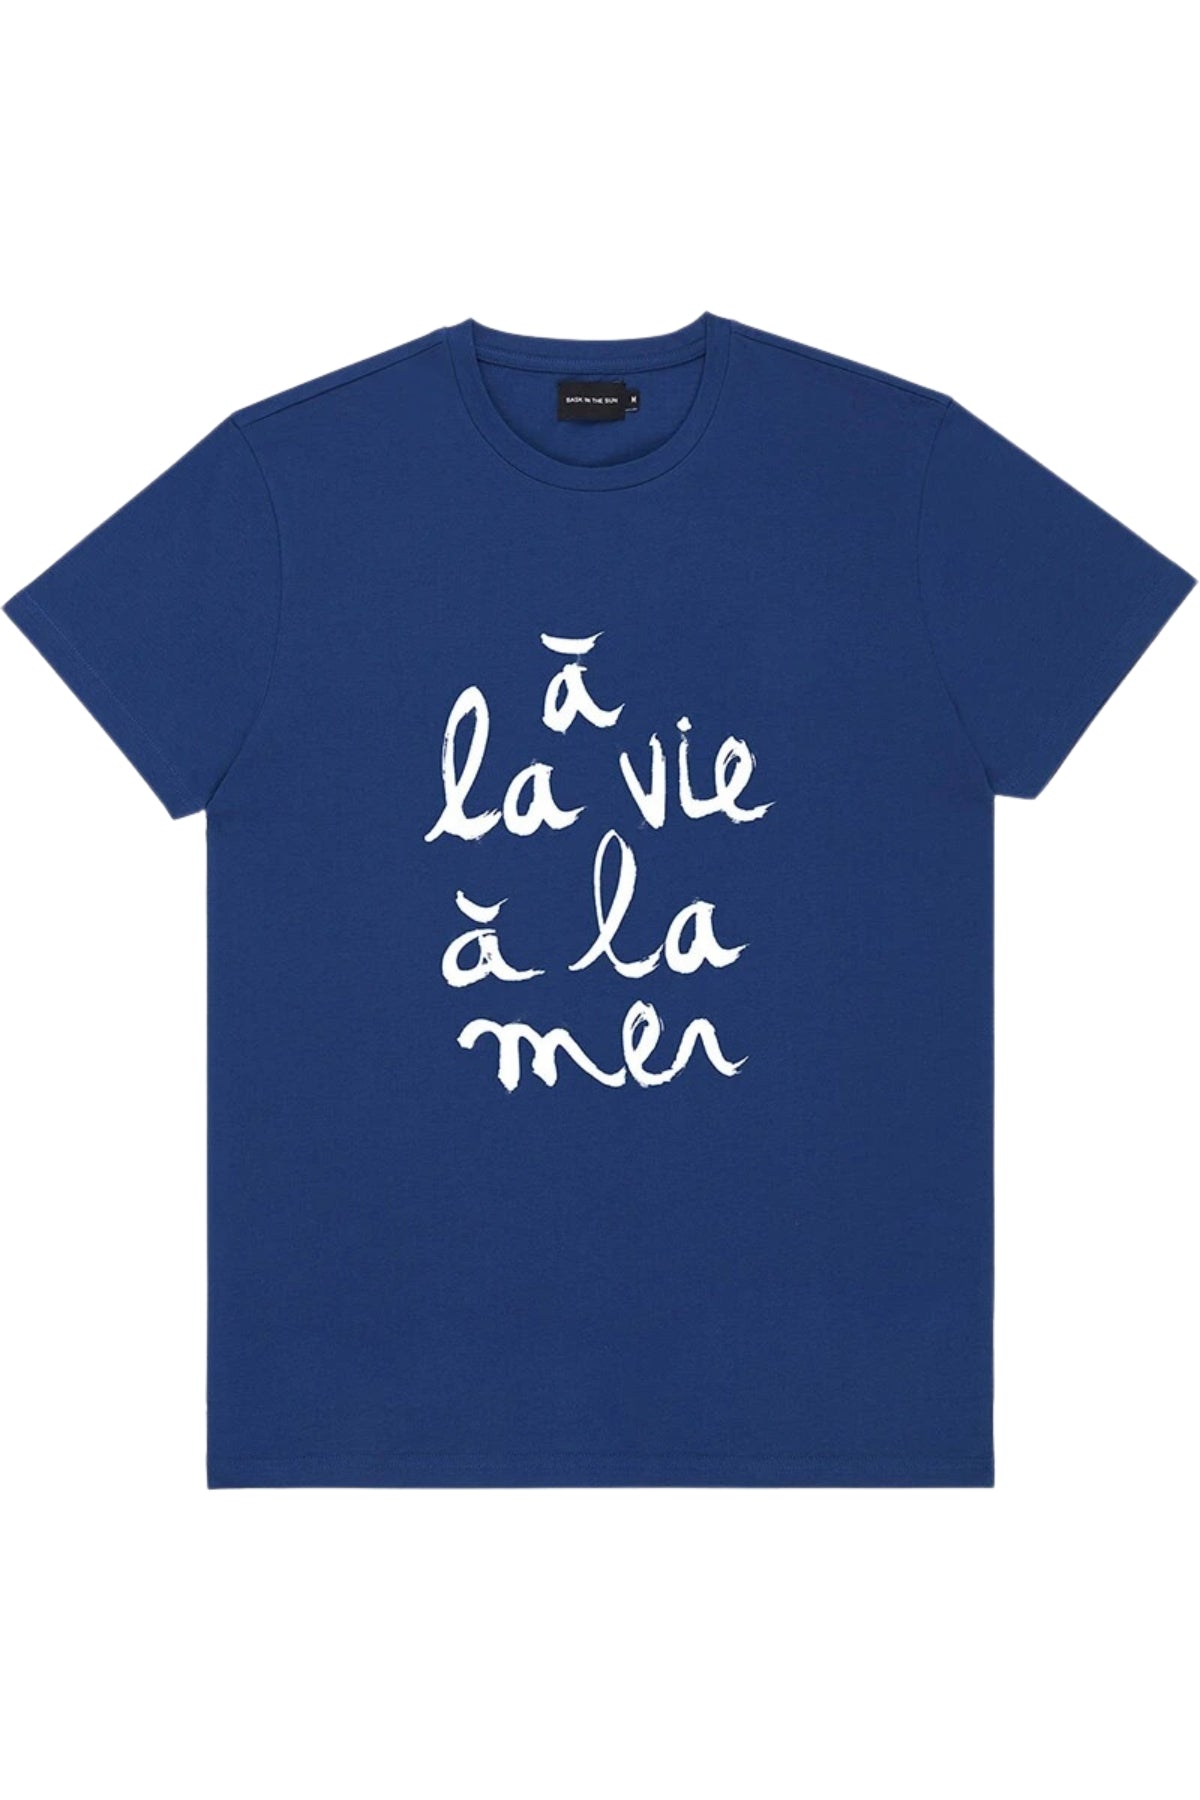 T-shirt À la vie - Bask in the sun